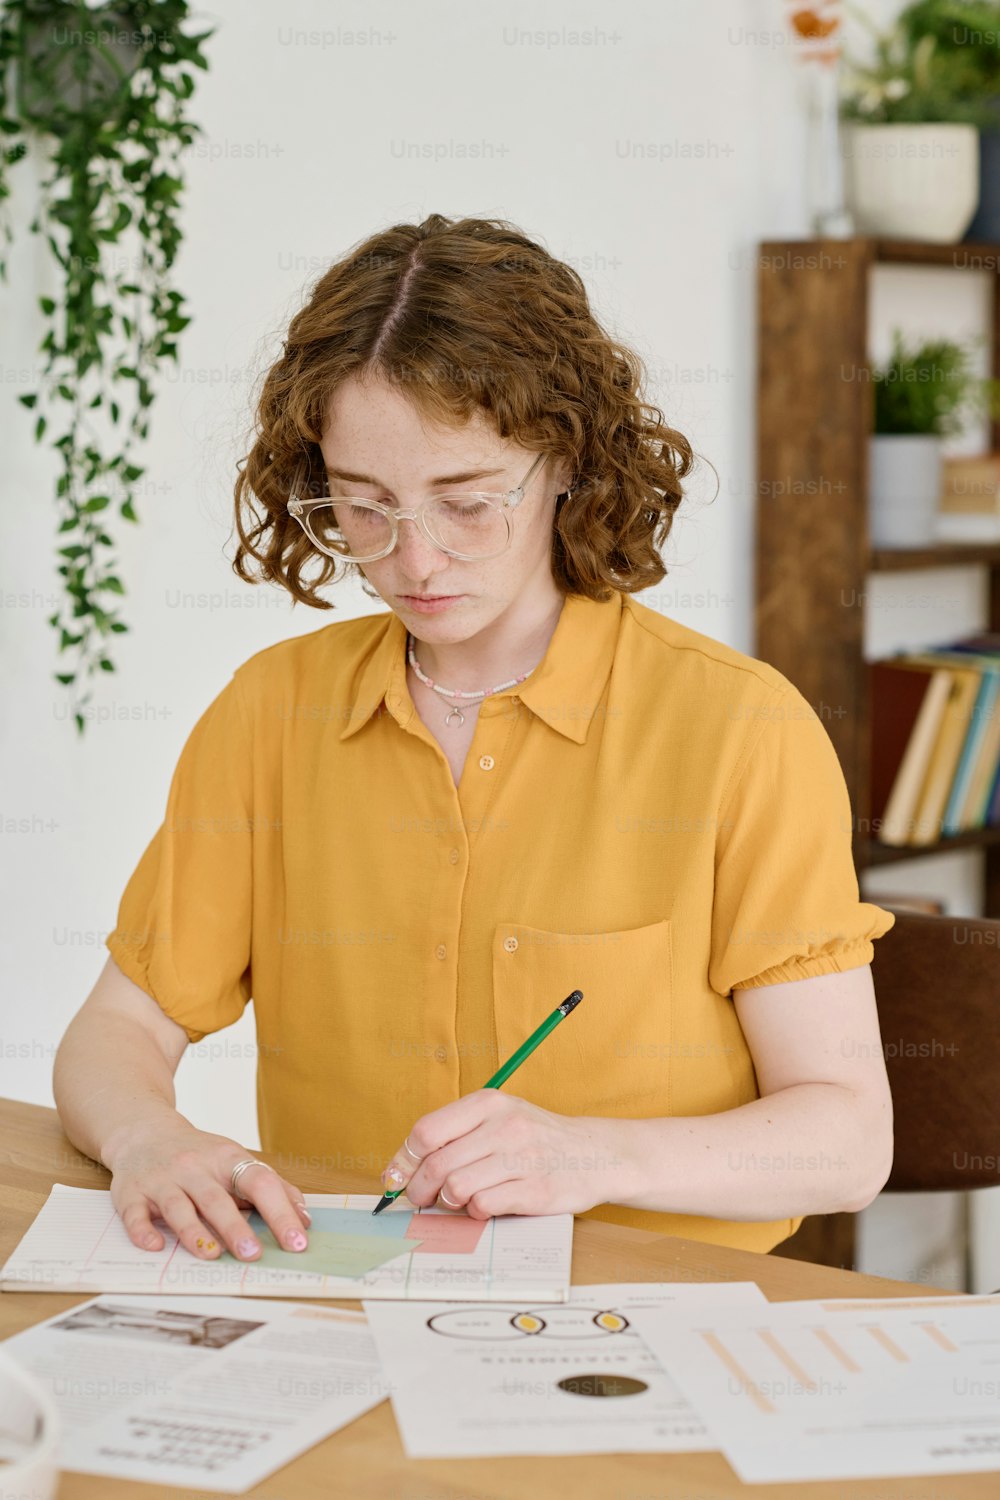 Giovane specialista freelance serio con schemi di lavoro a matita da disegno su carta mentre si siede sul posto di lavoro davanti alla macchina fotografica